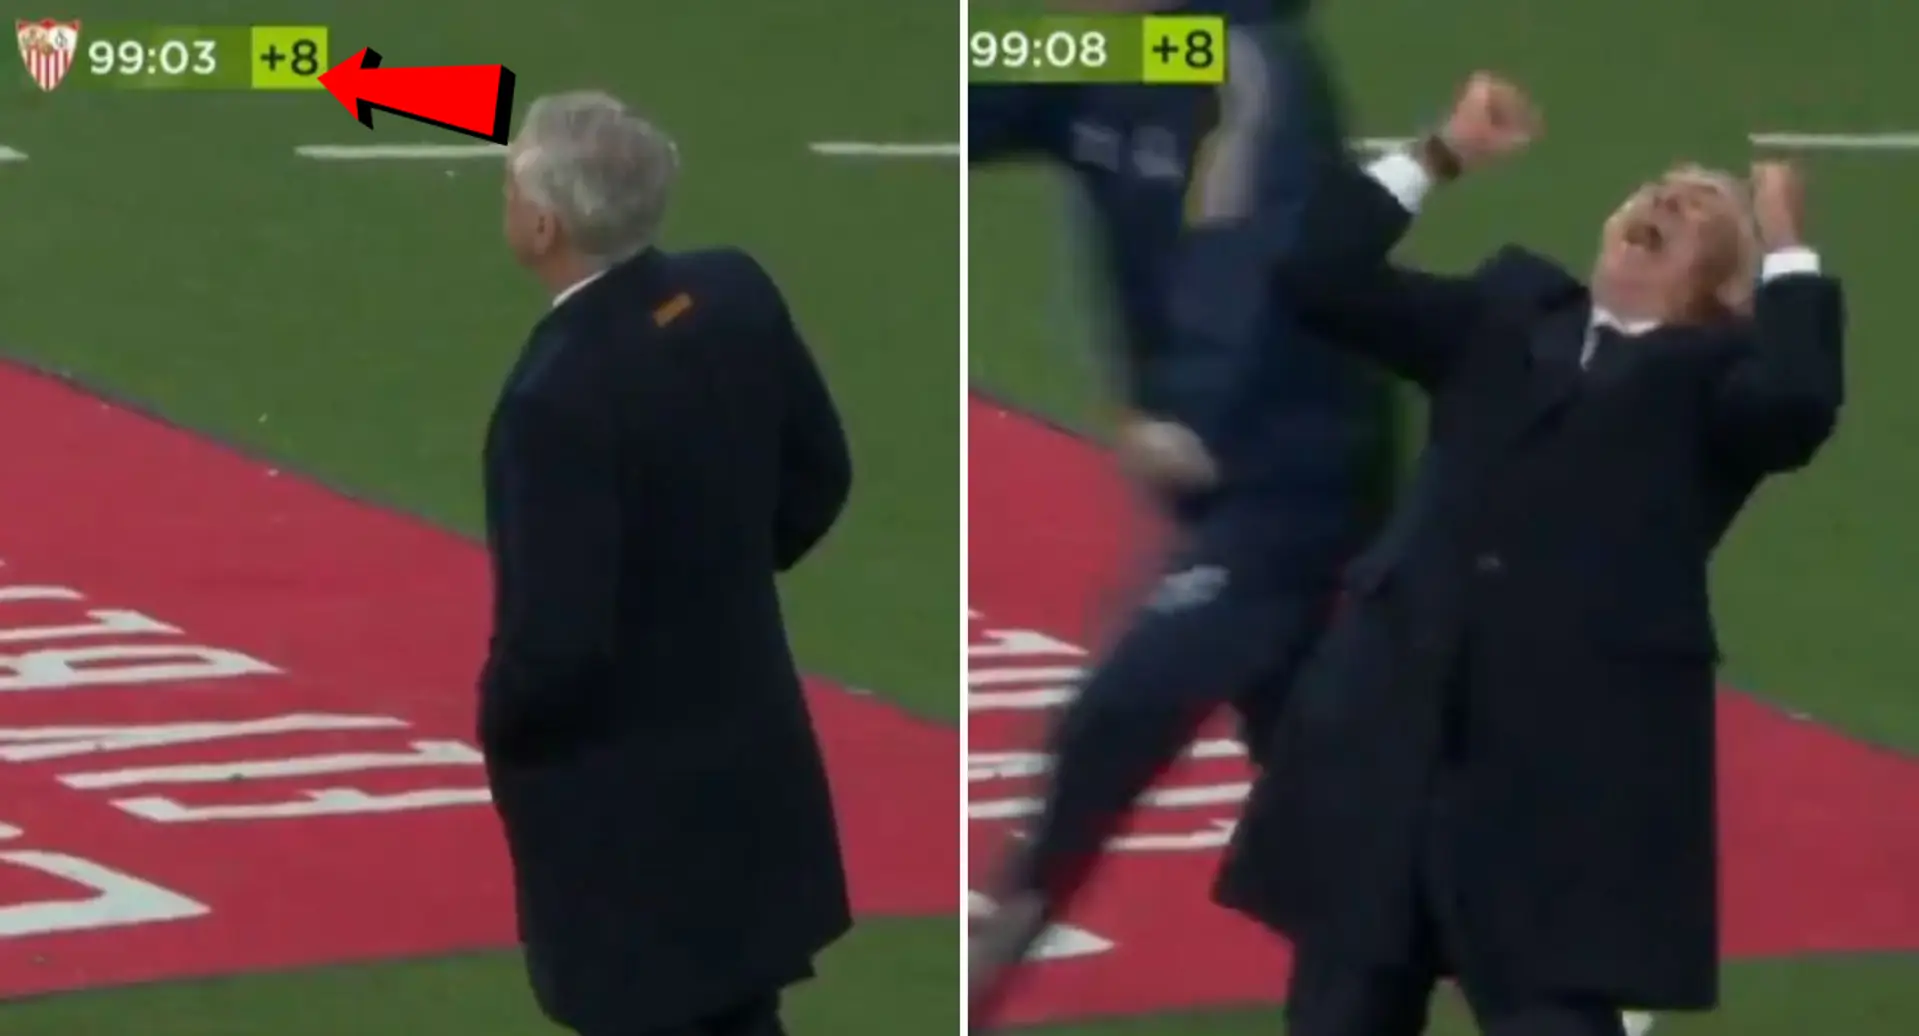 La réaction sauvage d'Ancelotti au coup de sifflet final à Bernabeu repérée – vous ne l'avez jamais vu comme ça auparavant